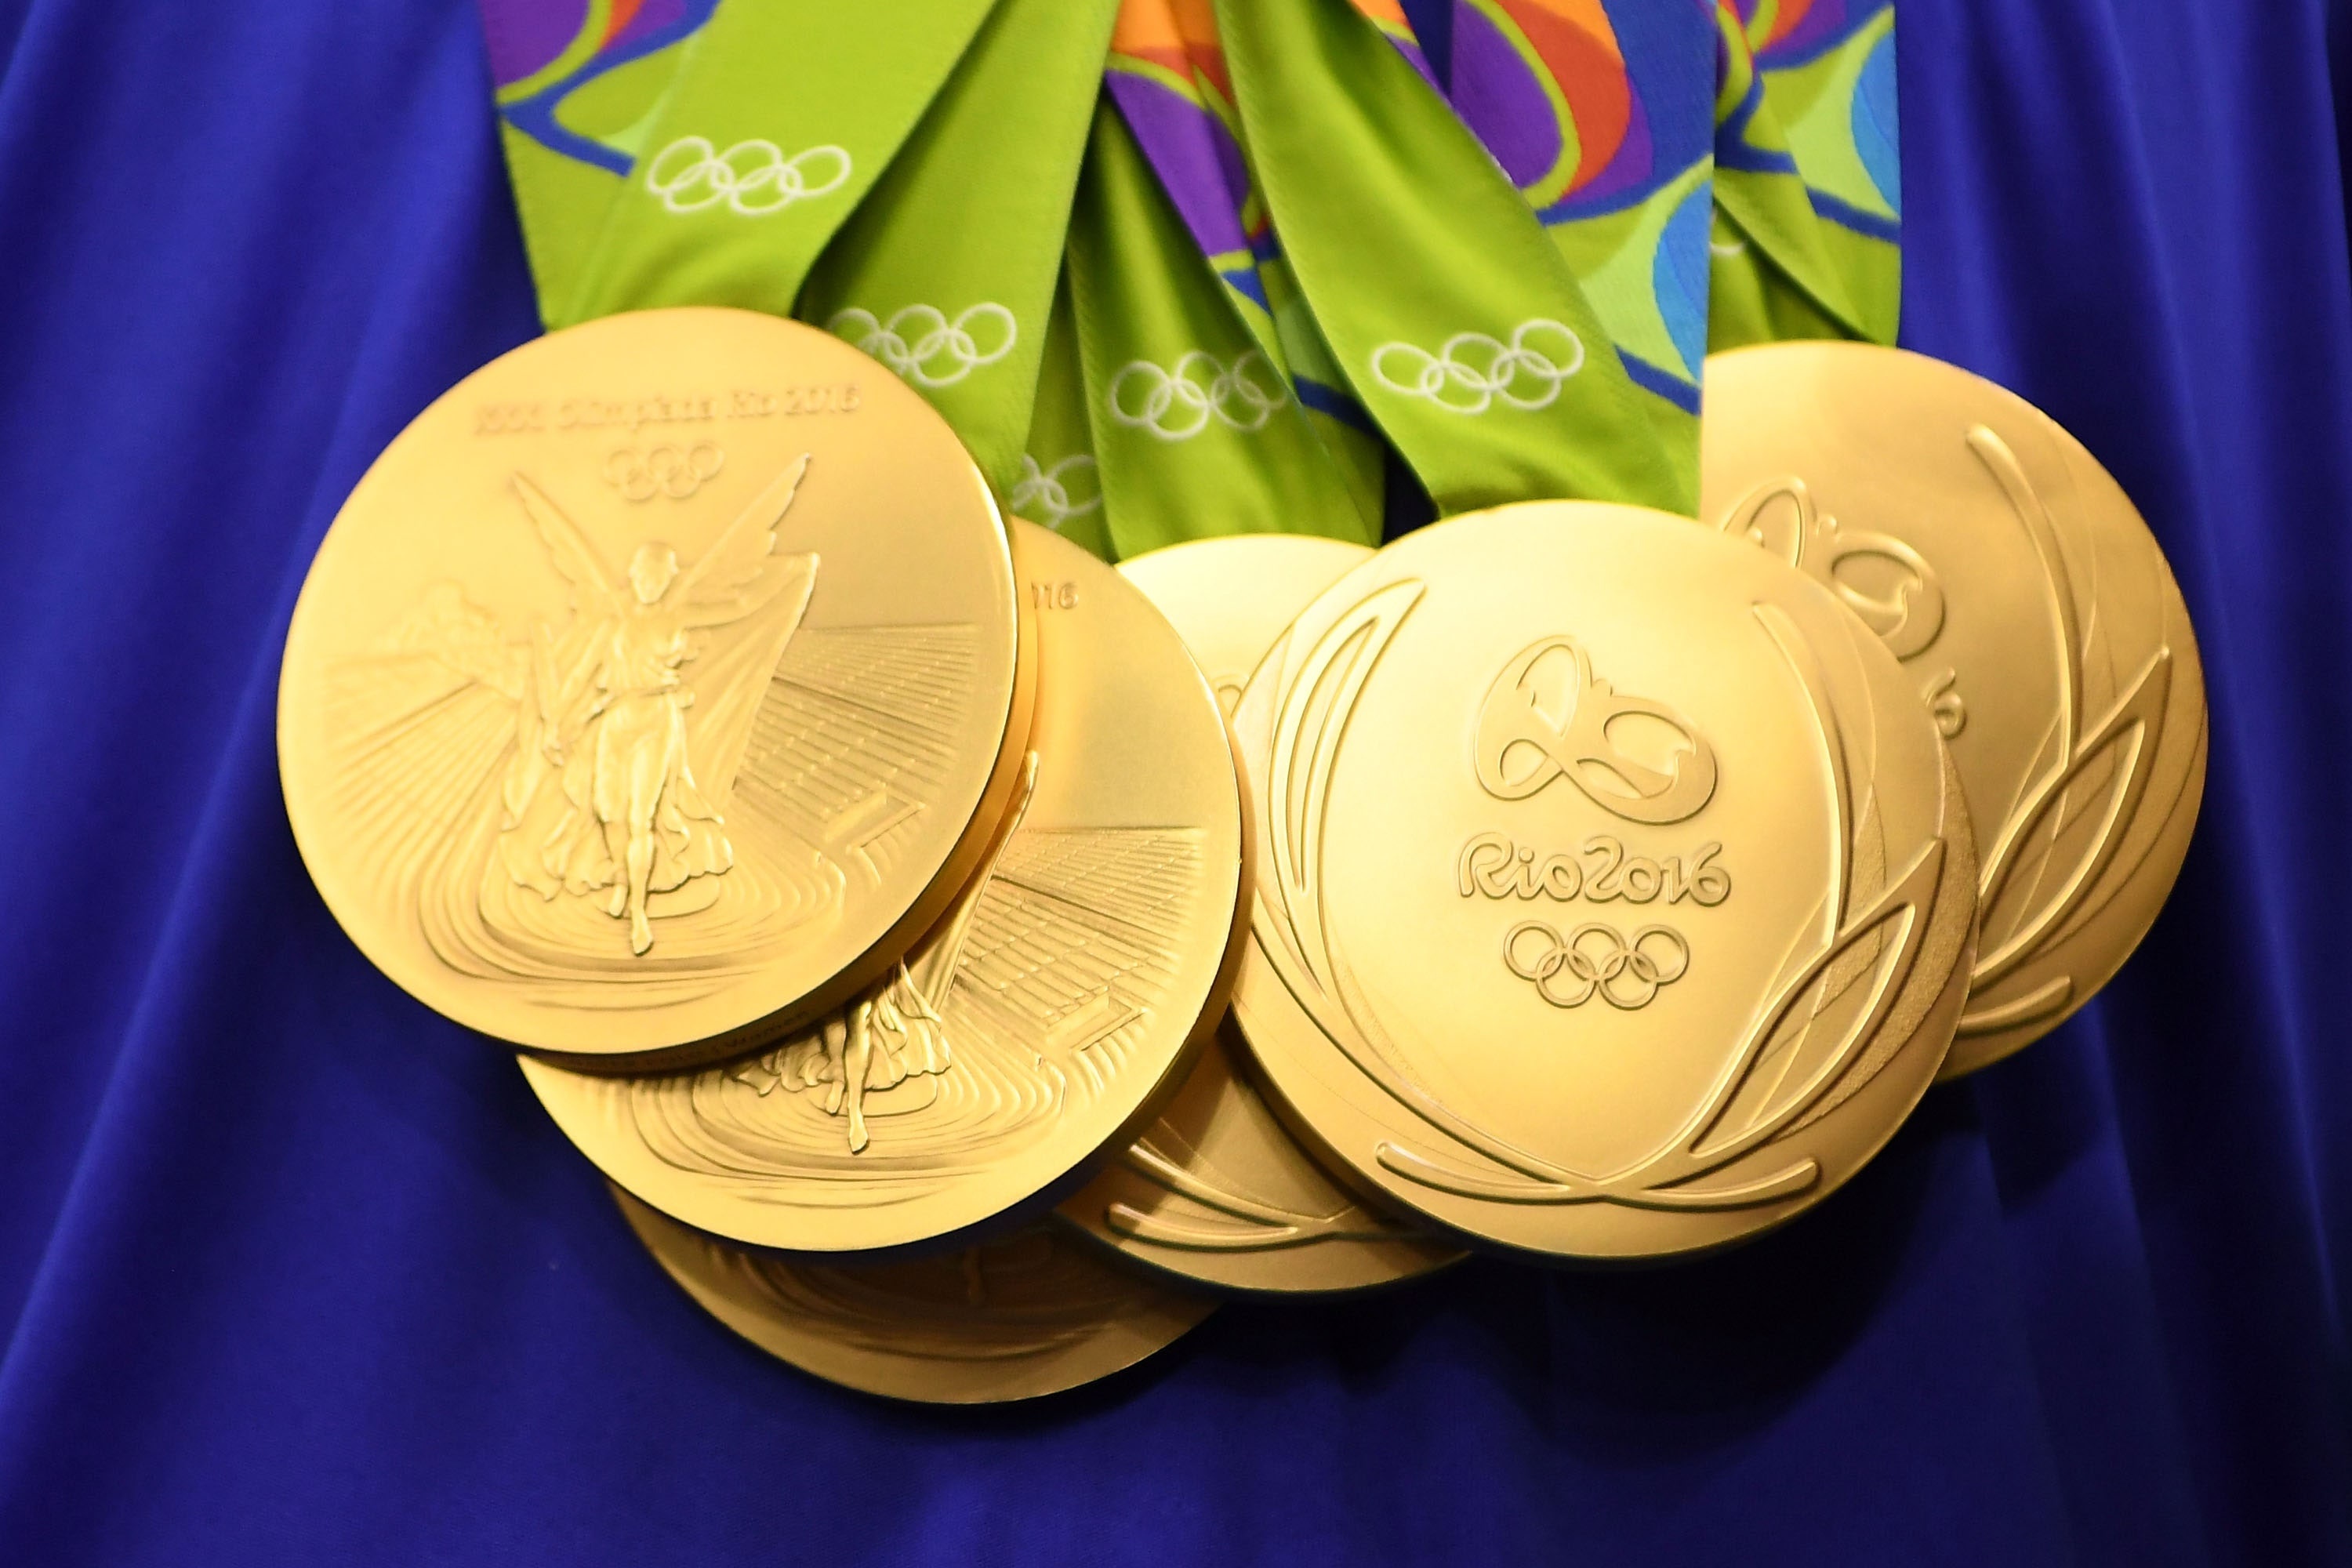 The most medals. Золотая Олимпийская медаль. Золотая медаль Олимпийских игр 2018. Олимпийское золото. Золото олимпиады.